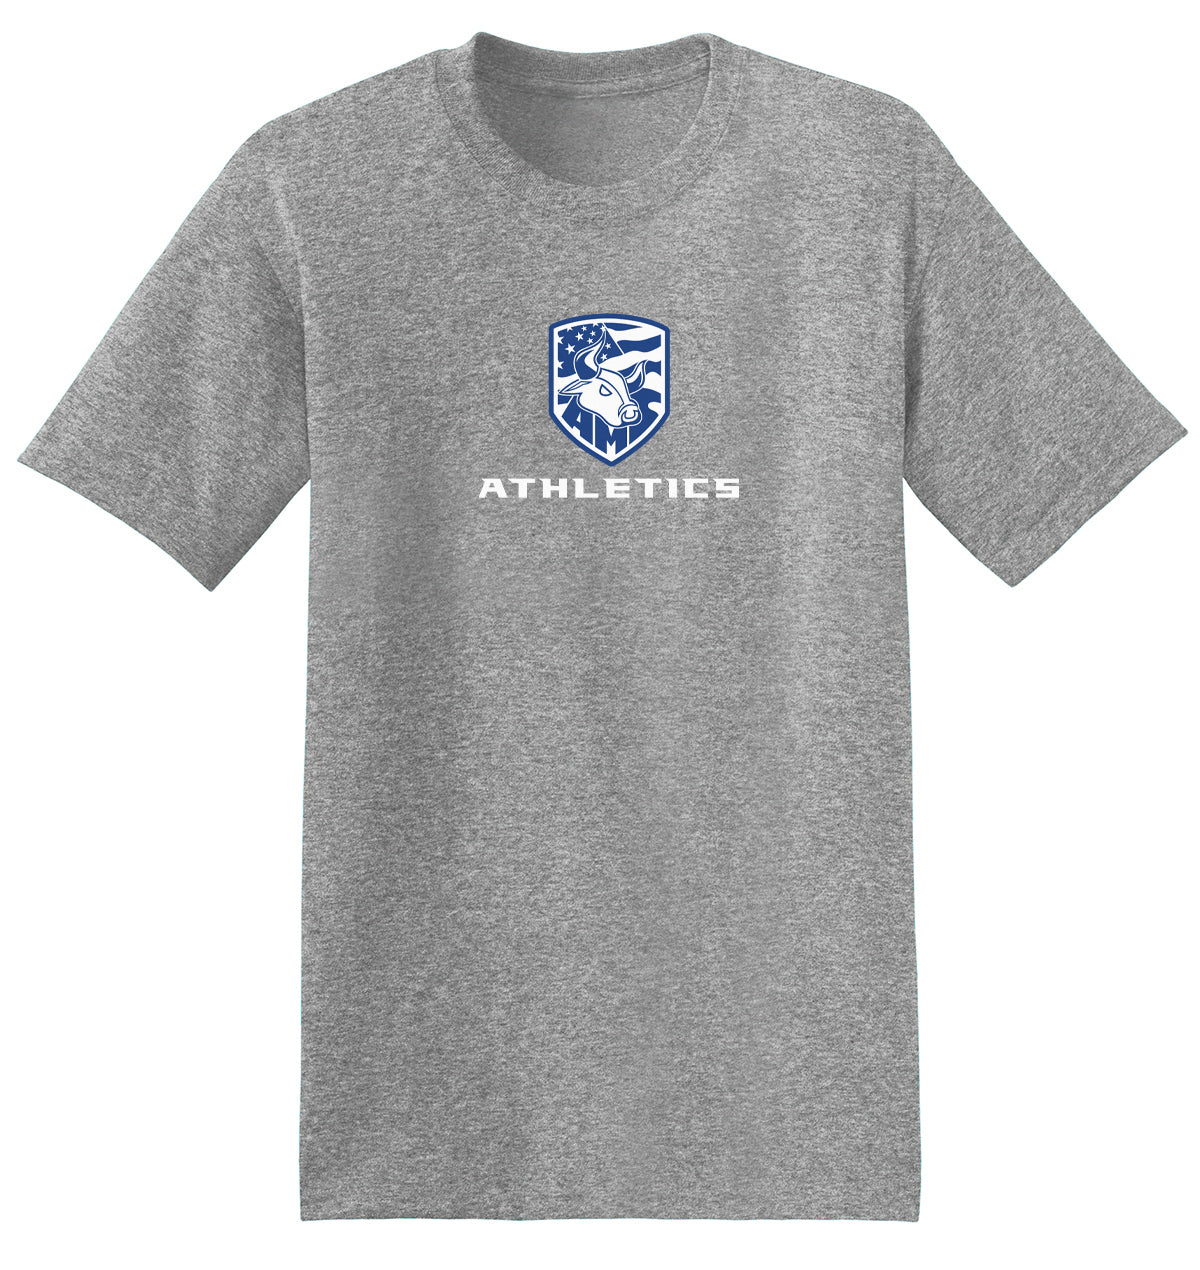 Accompsett Middle School Men's Light Steel T-Shirt